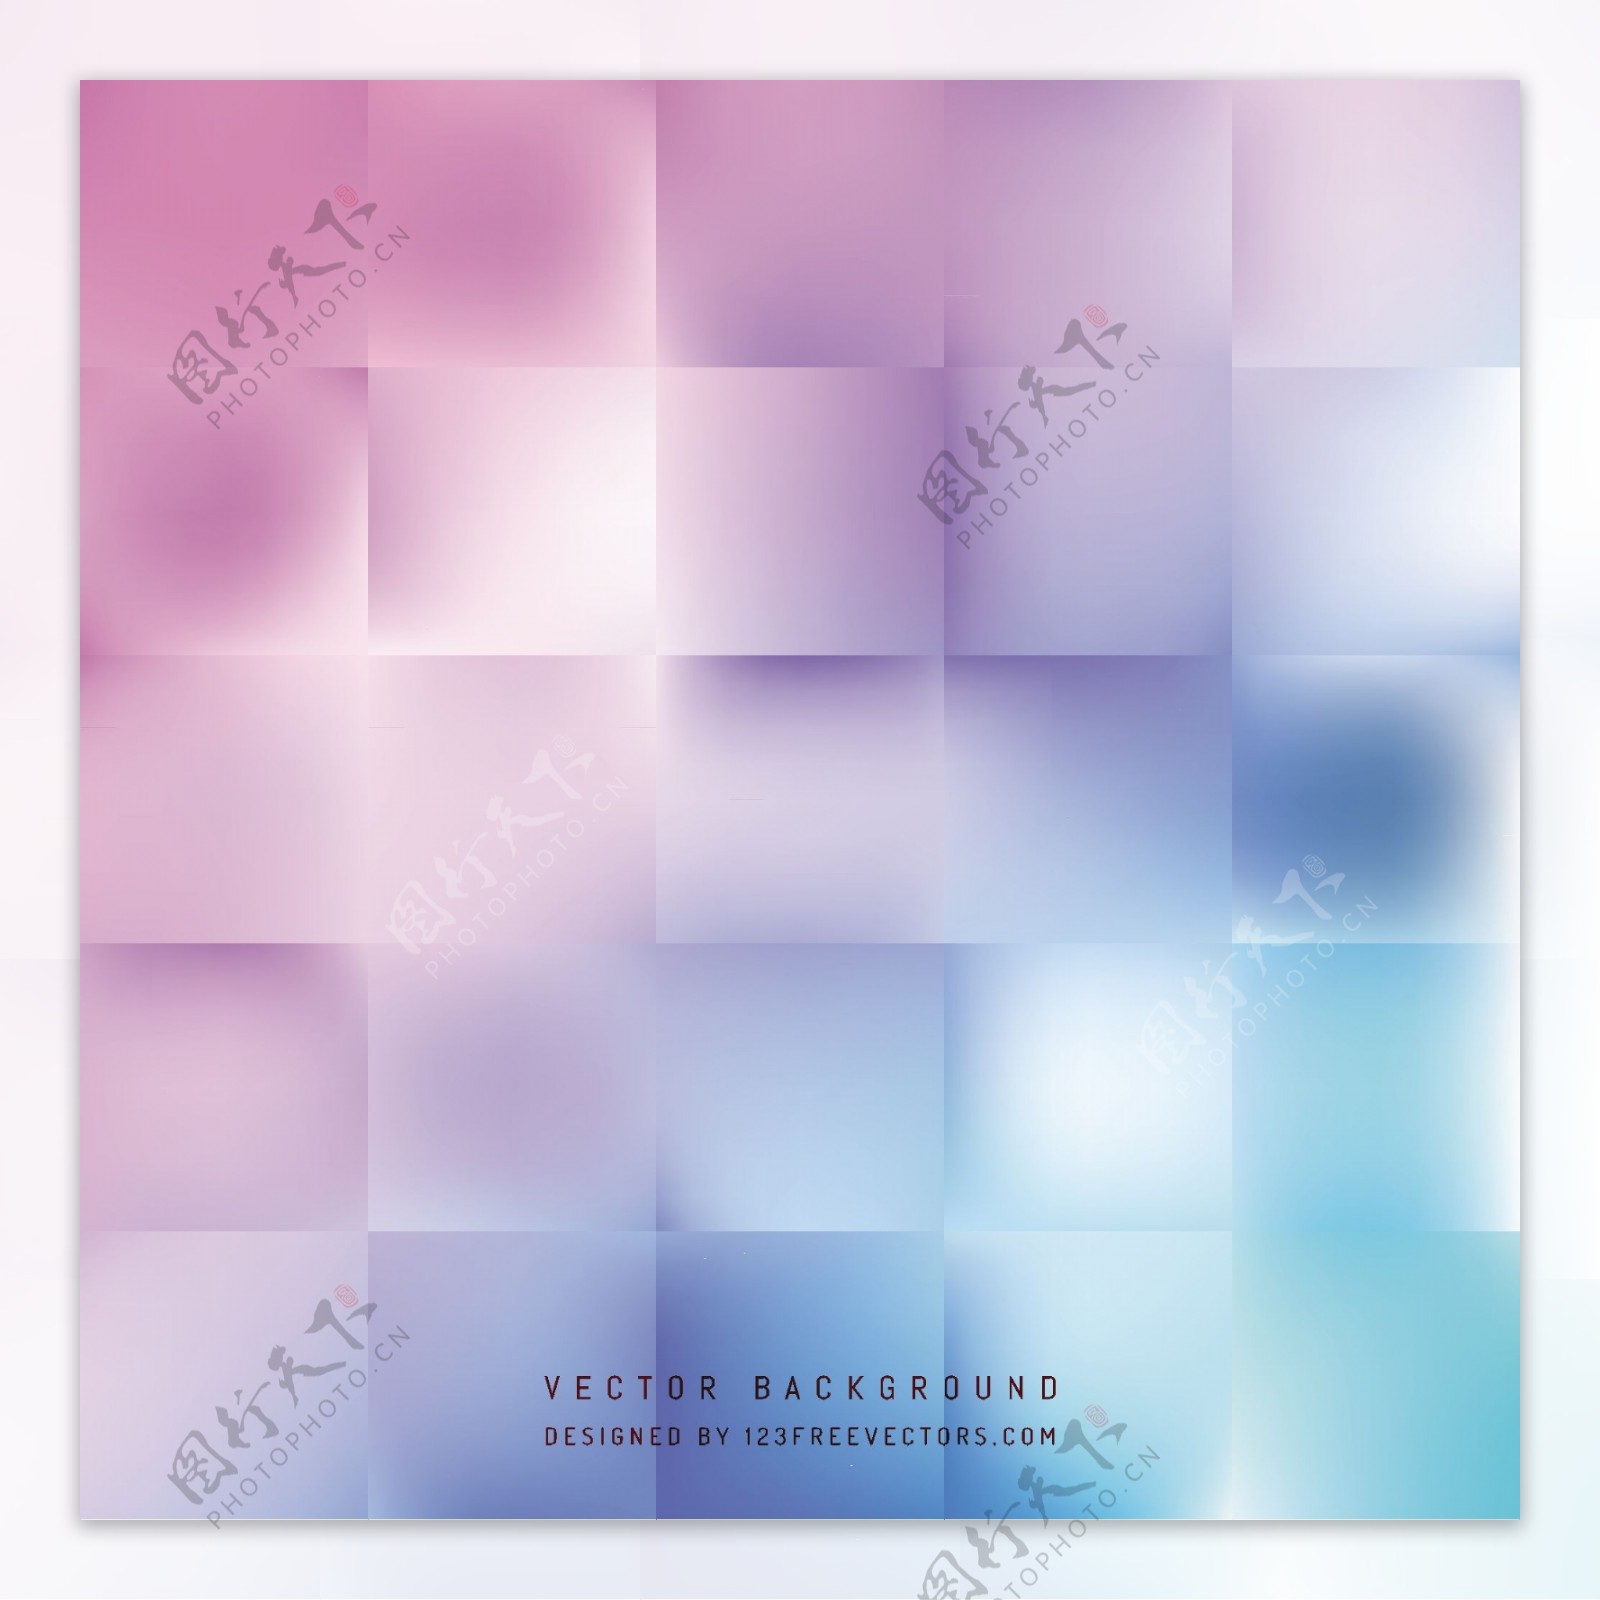 抽象蓝色紫色方形背景模板